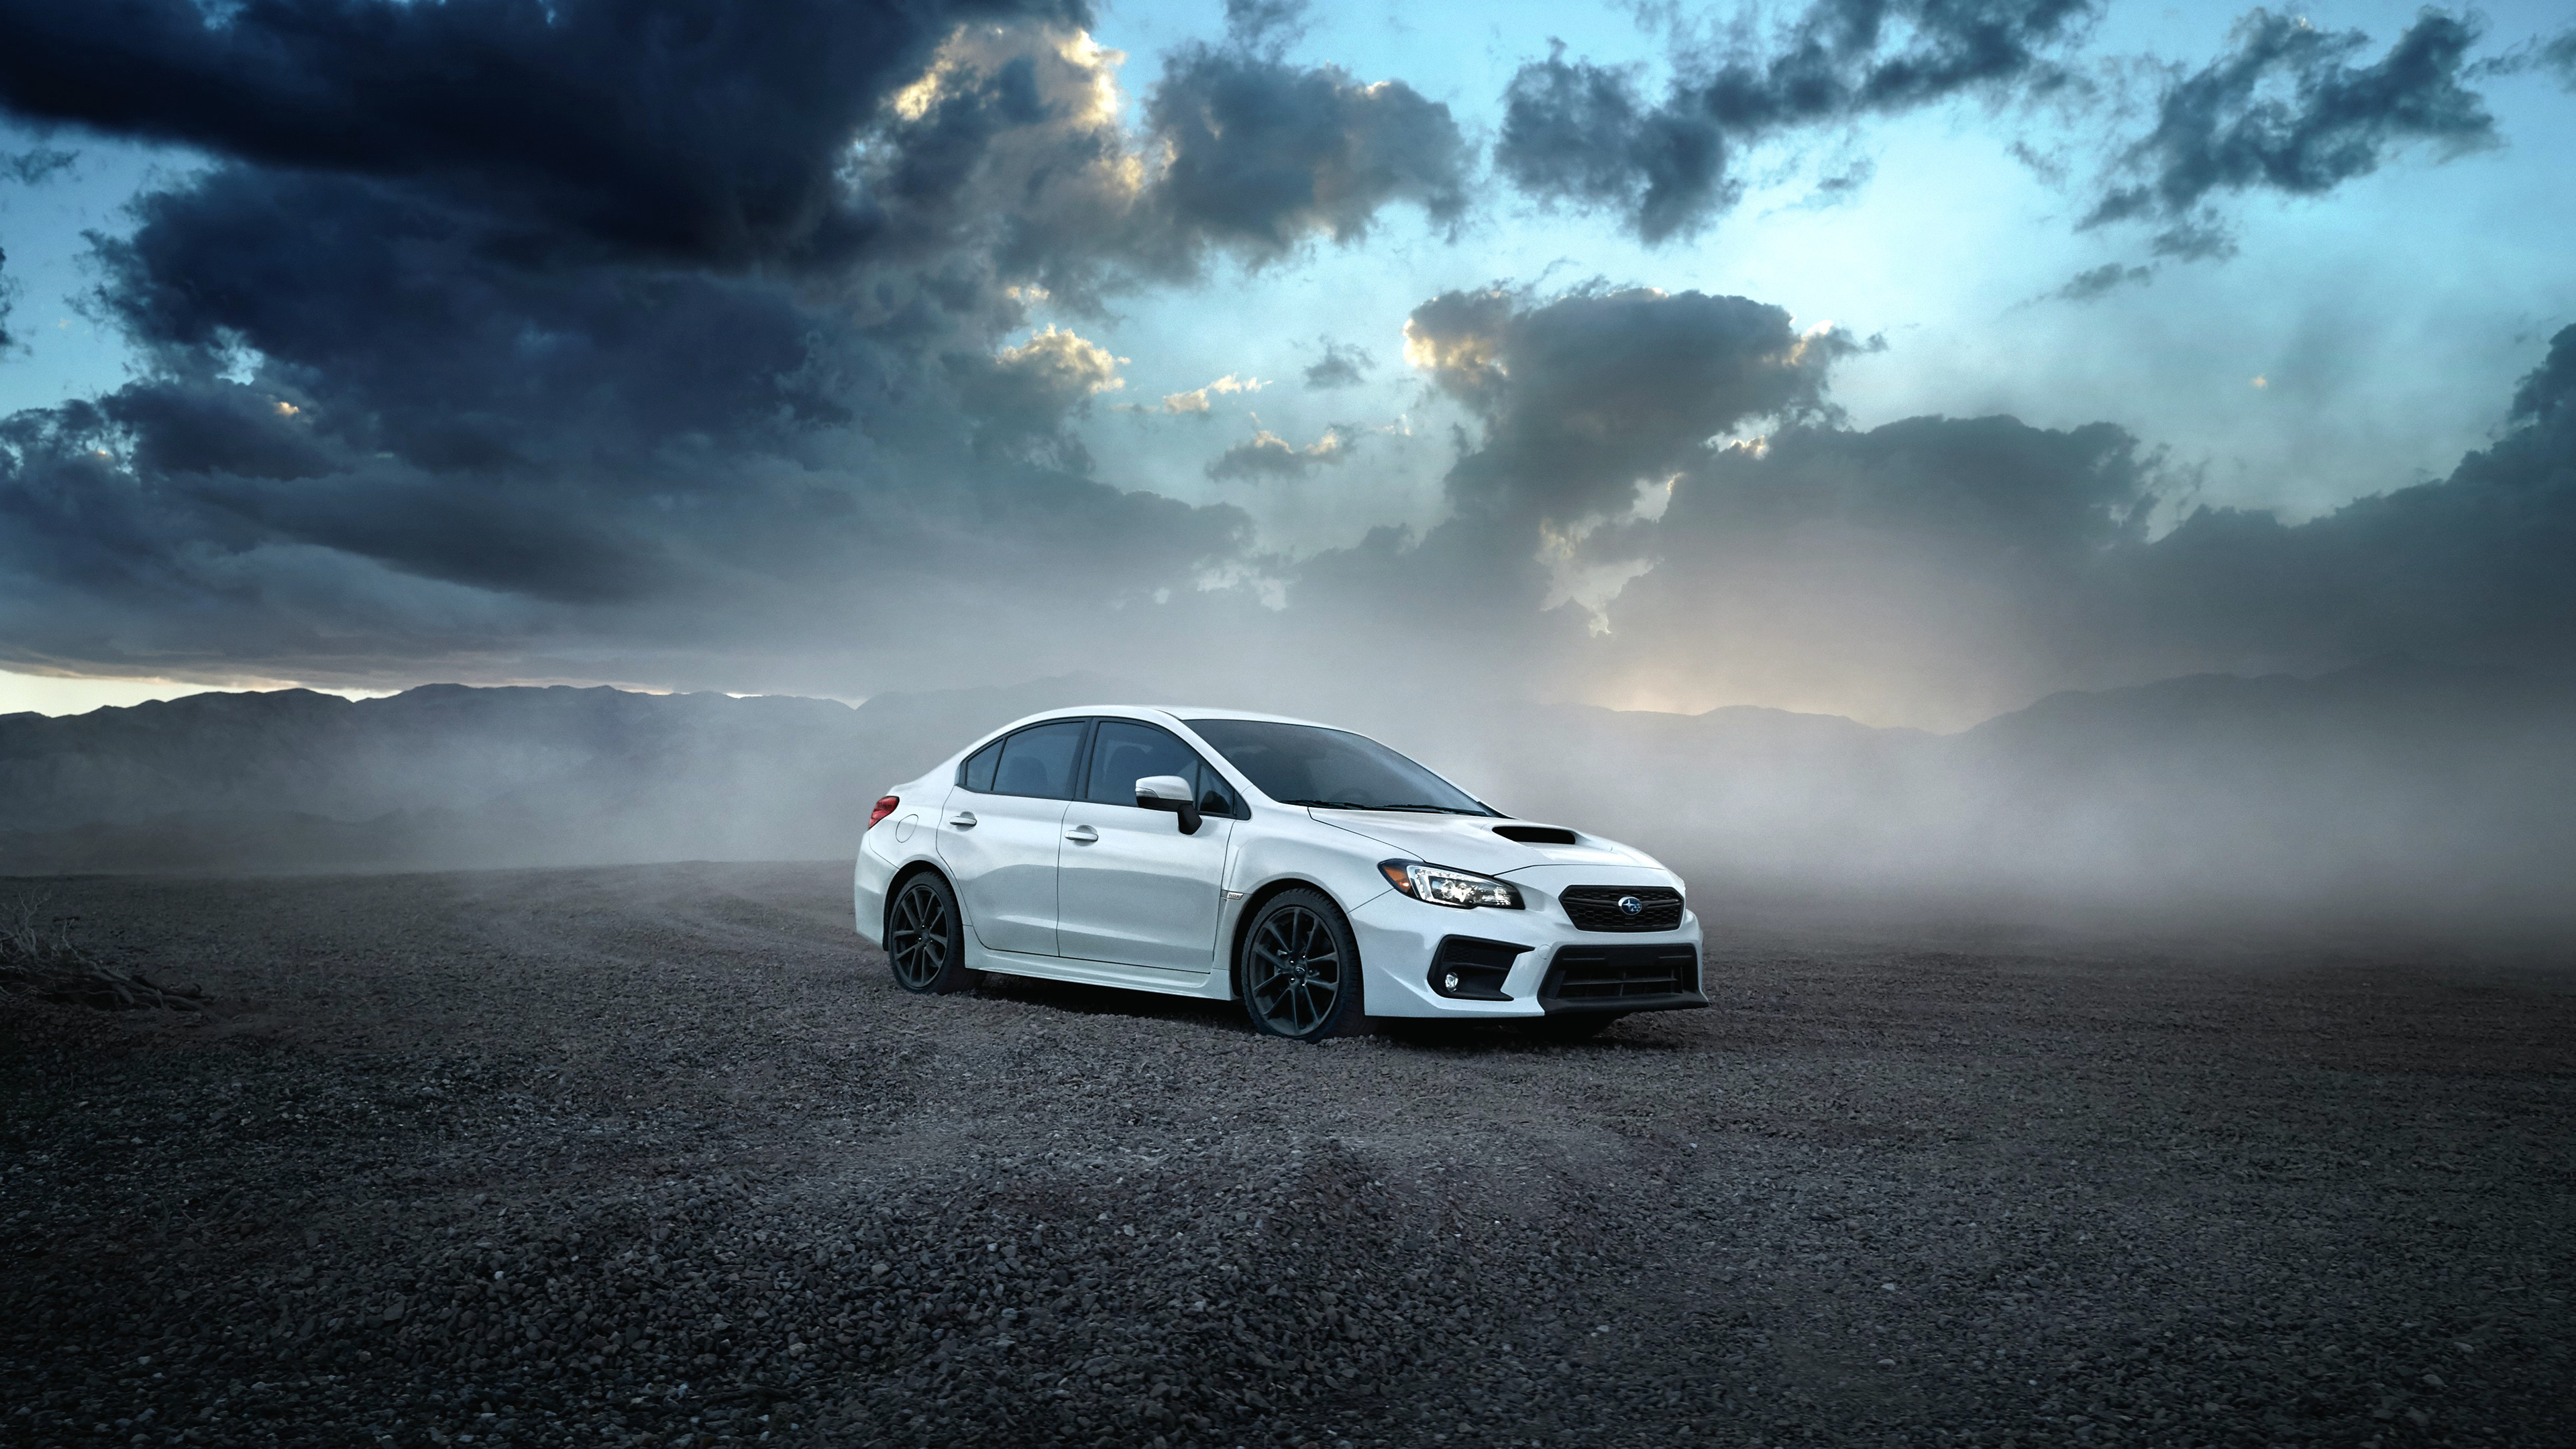 2020 Subaru Wrx , HD Wallpaper & Backgrounds